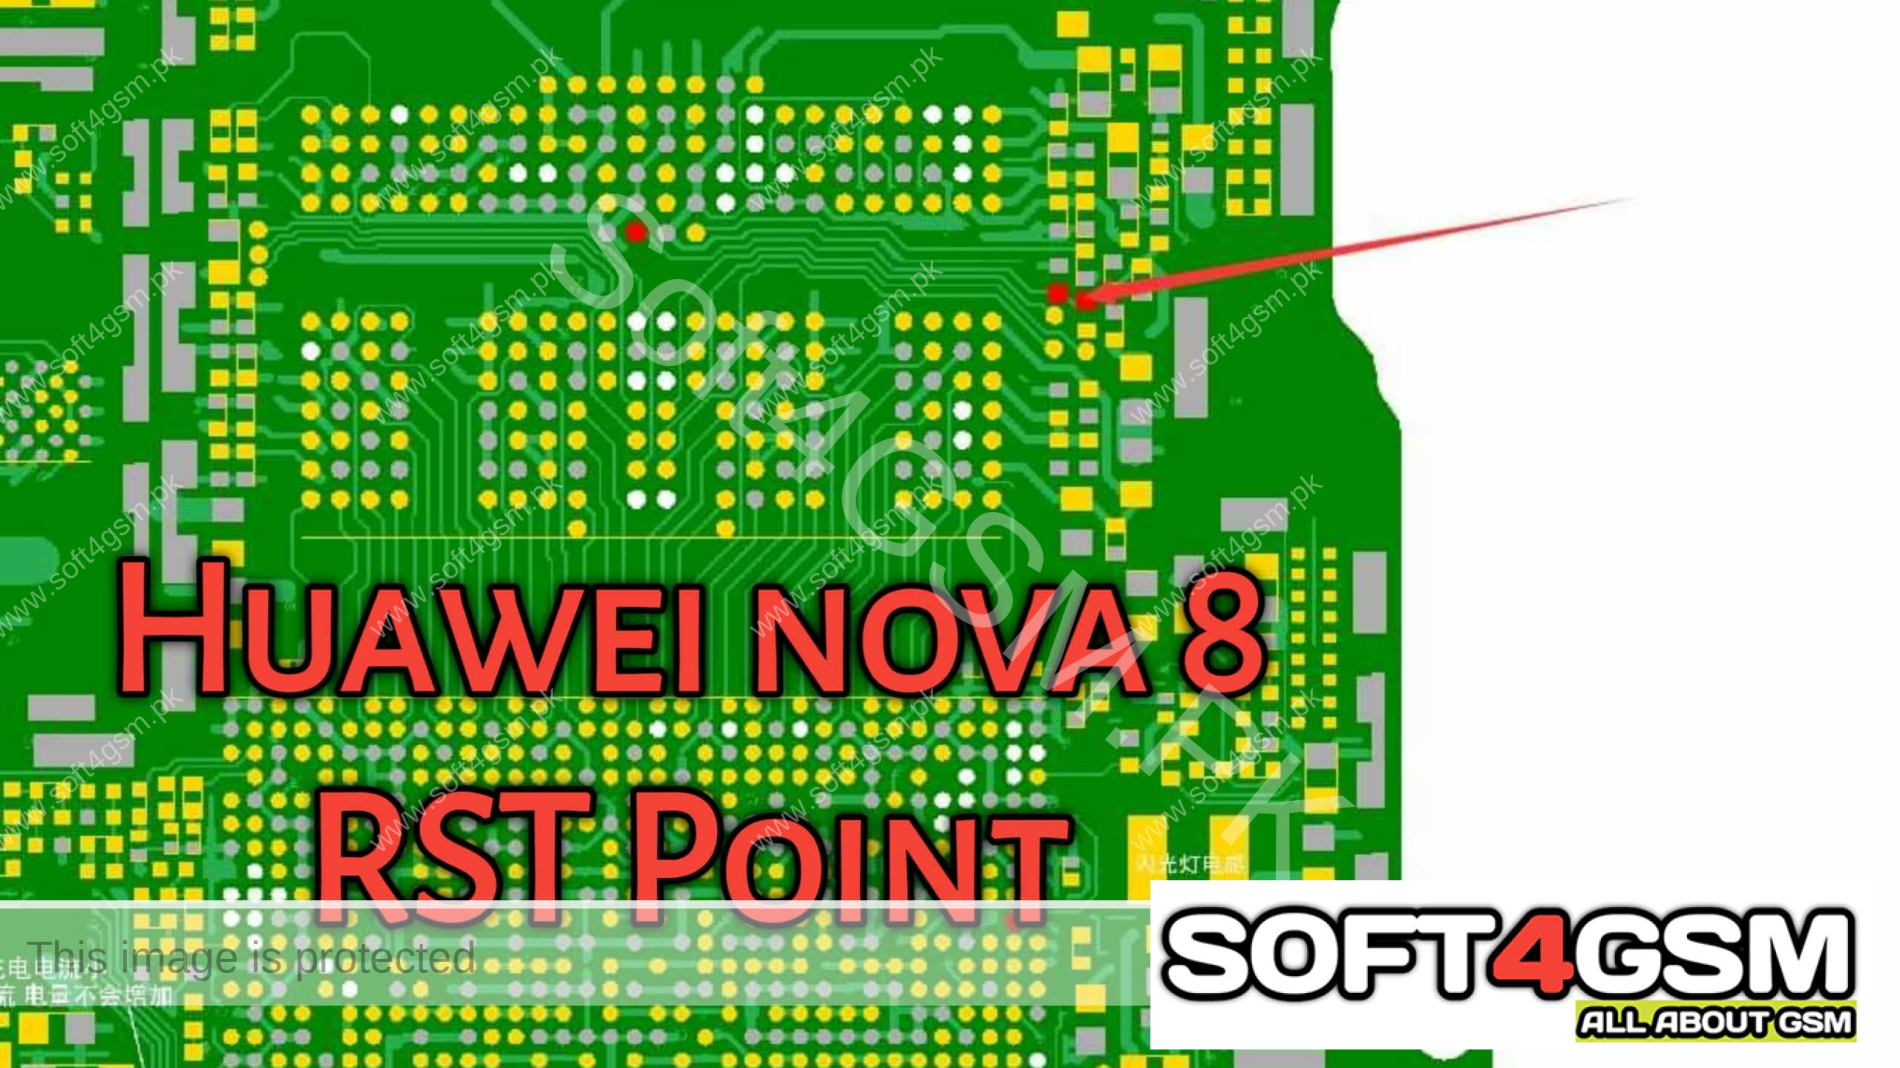 Huawei NOVA 8 RST Point